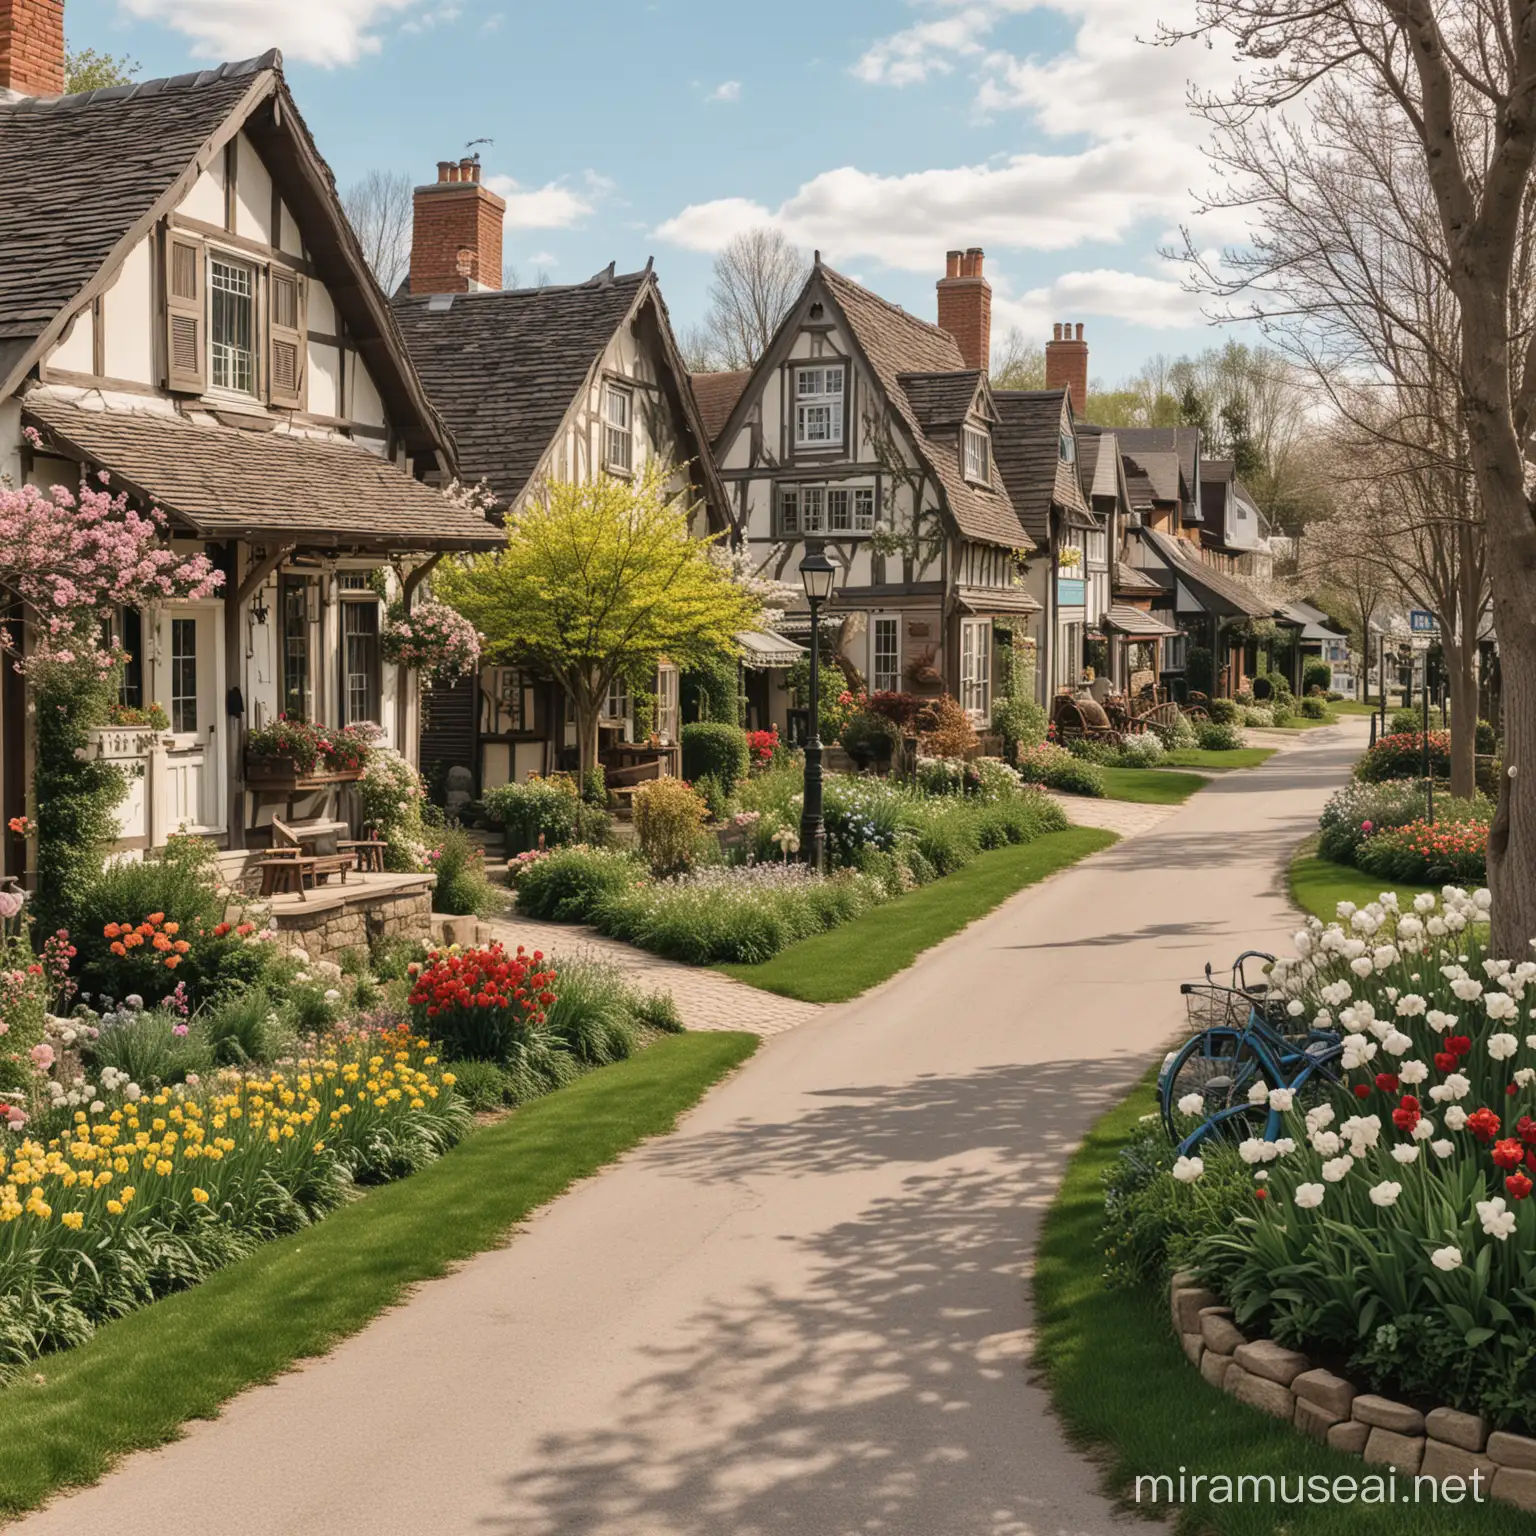 quaint, springtime village, cottagecore vibes
